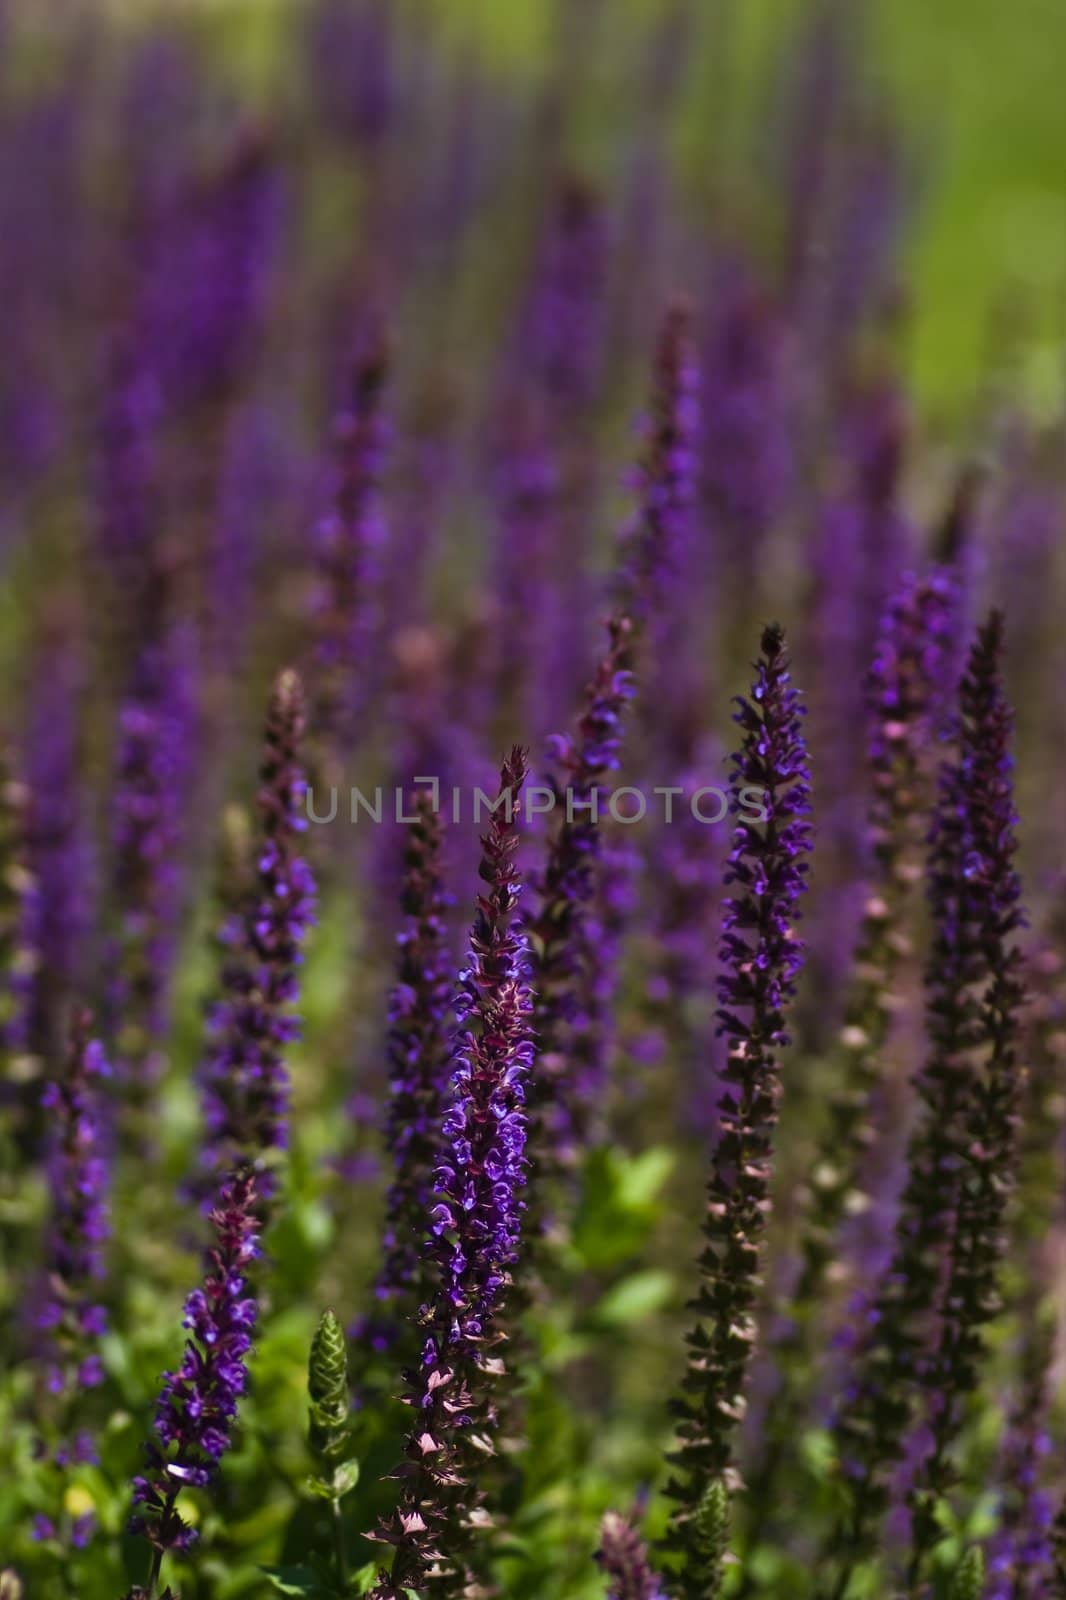 Field of purple summer flowers in the sunshine in June